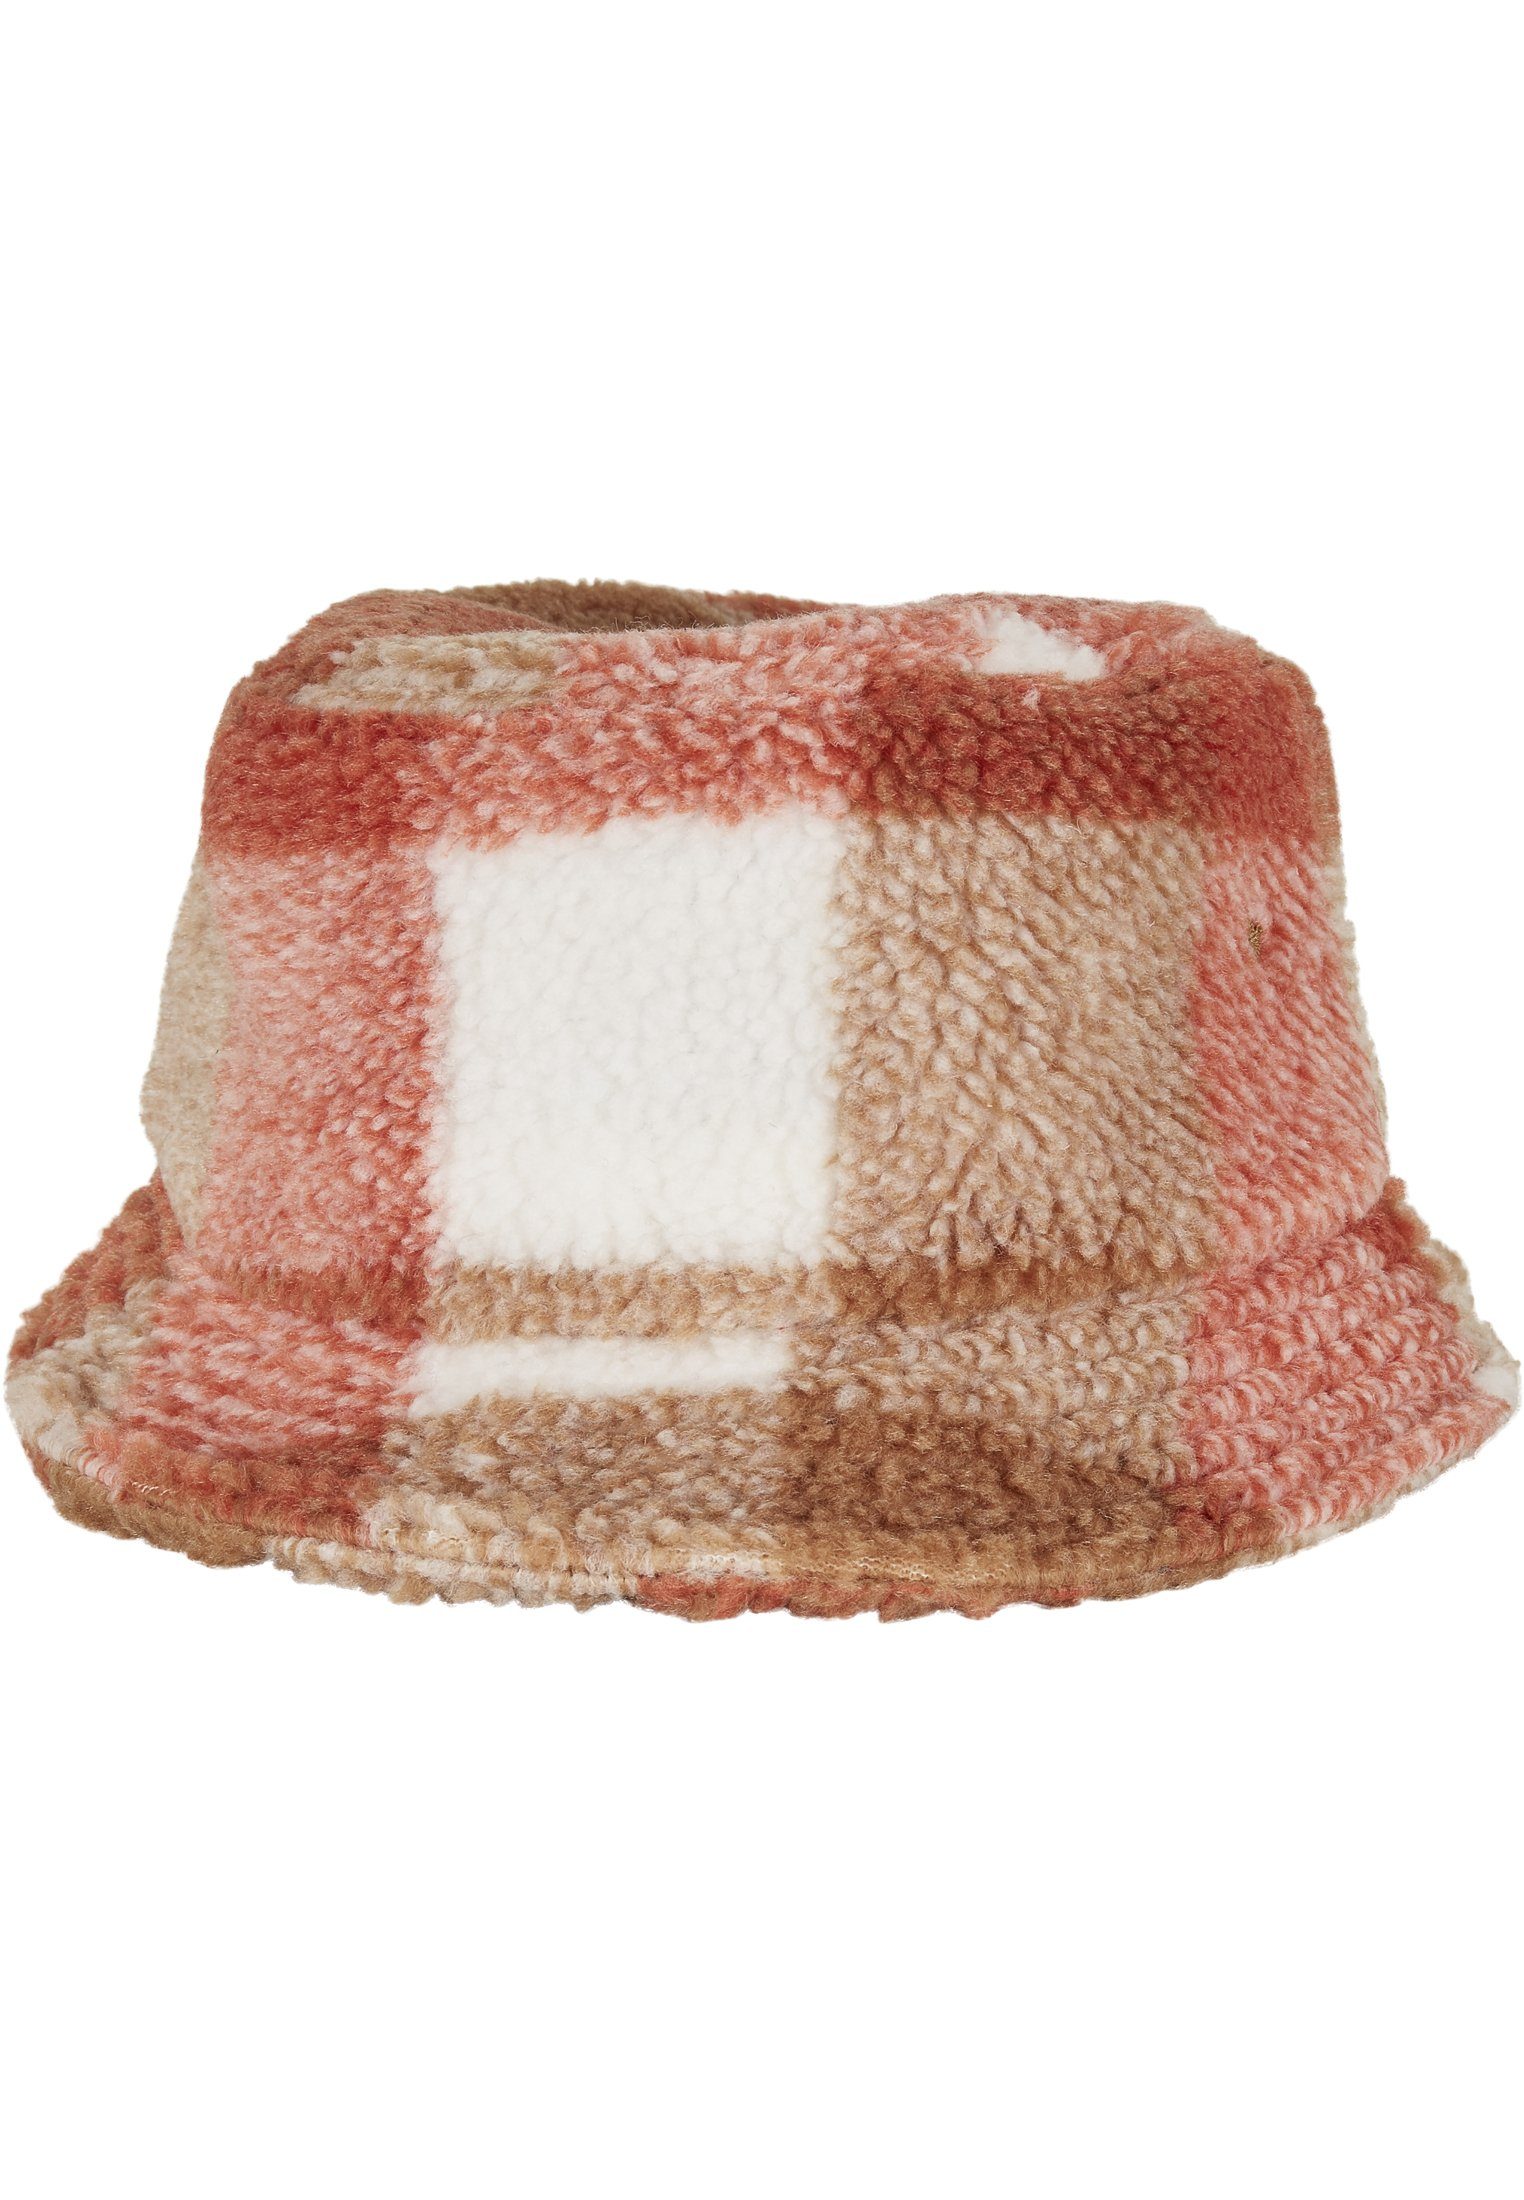 Flexfit Flex Bucket whitesand/toffee Cap Bucket Hat Check Hat Sherpa